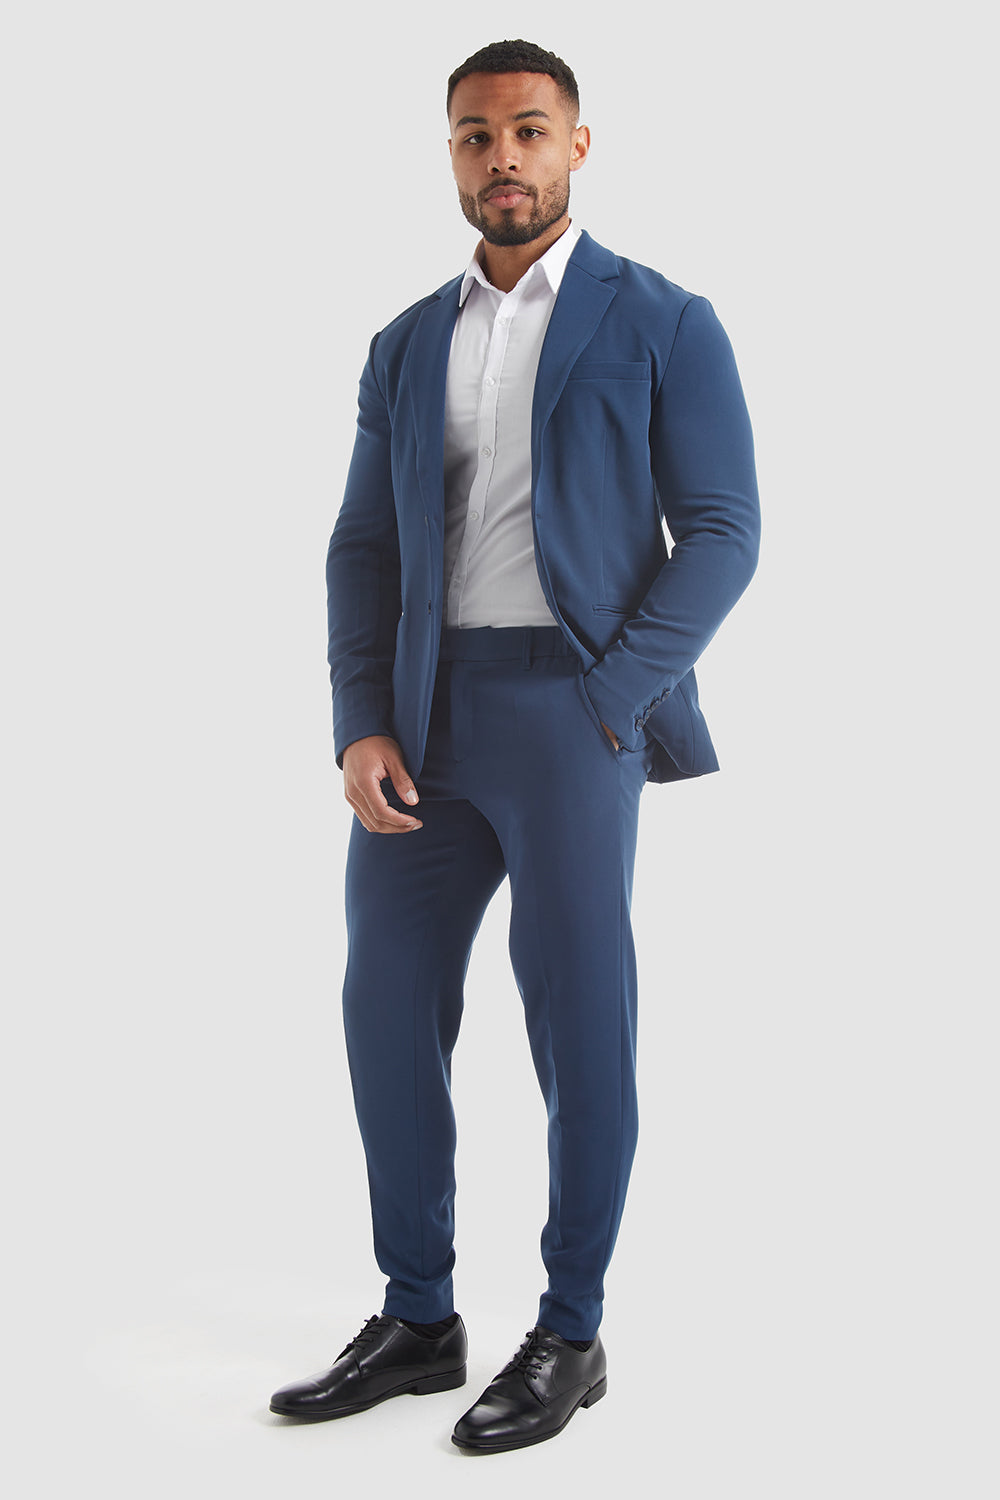 MDB 18089 ( Pant Style Suit Design Images ) | Fashion pants, Suit designs,  Wedding guest pants